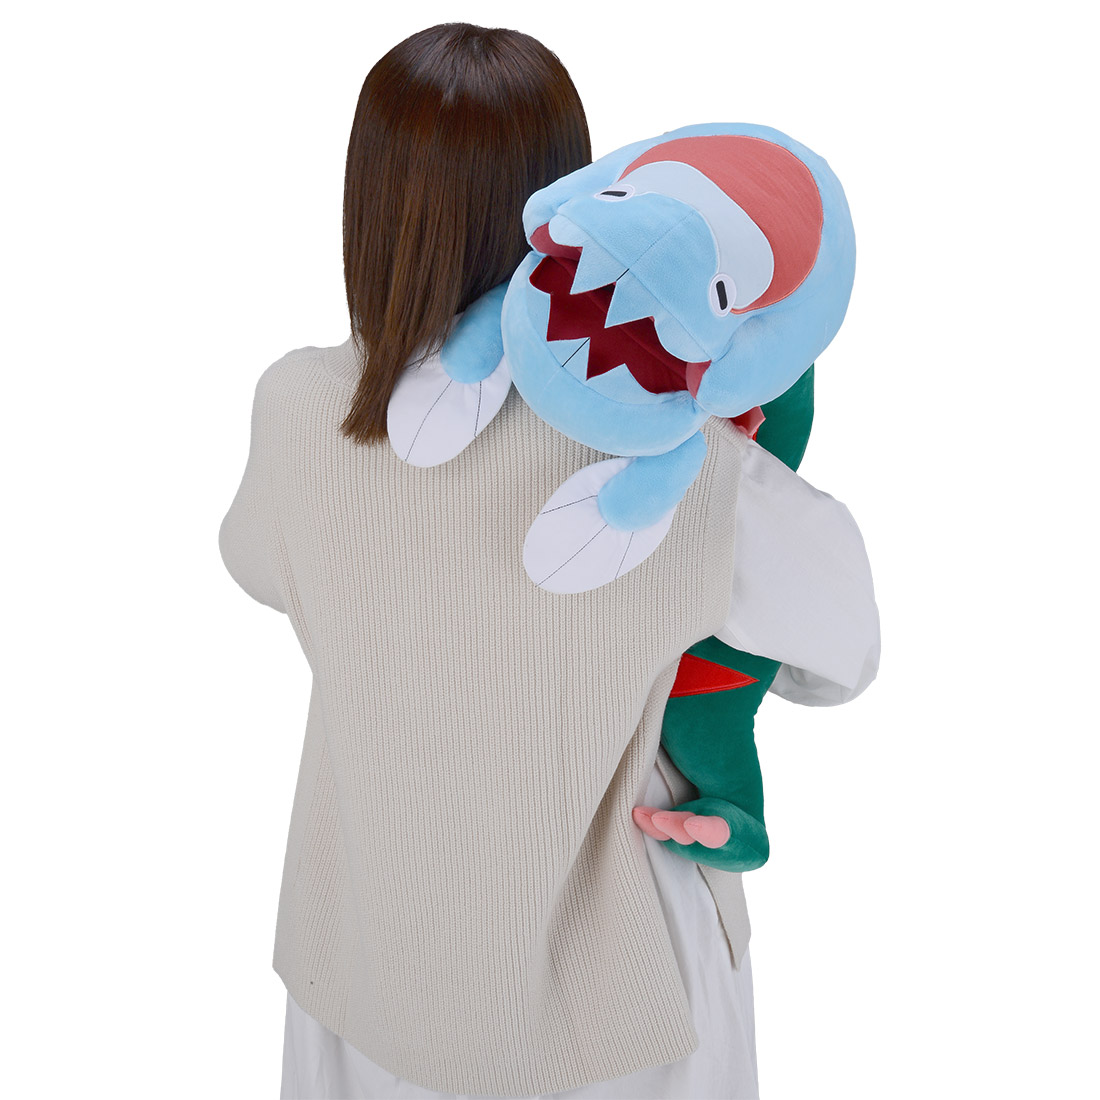 Dracovish Pokémon Plush